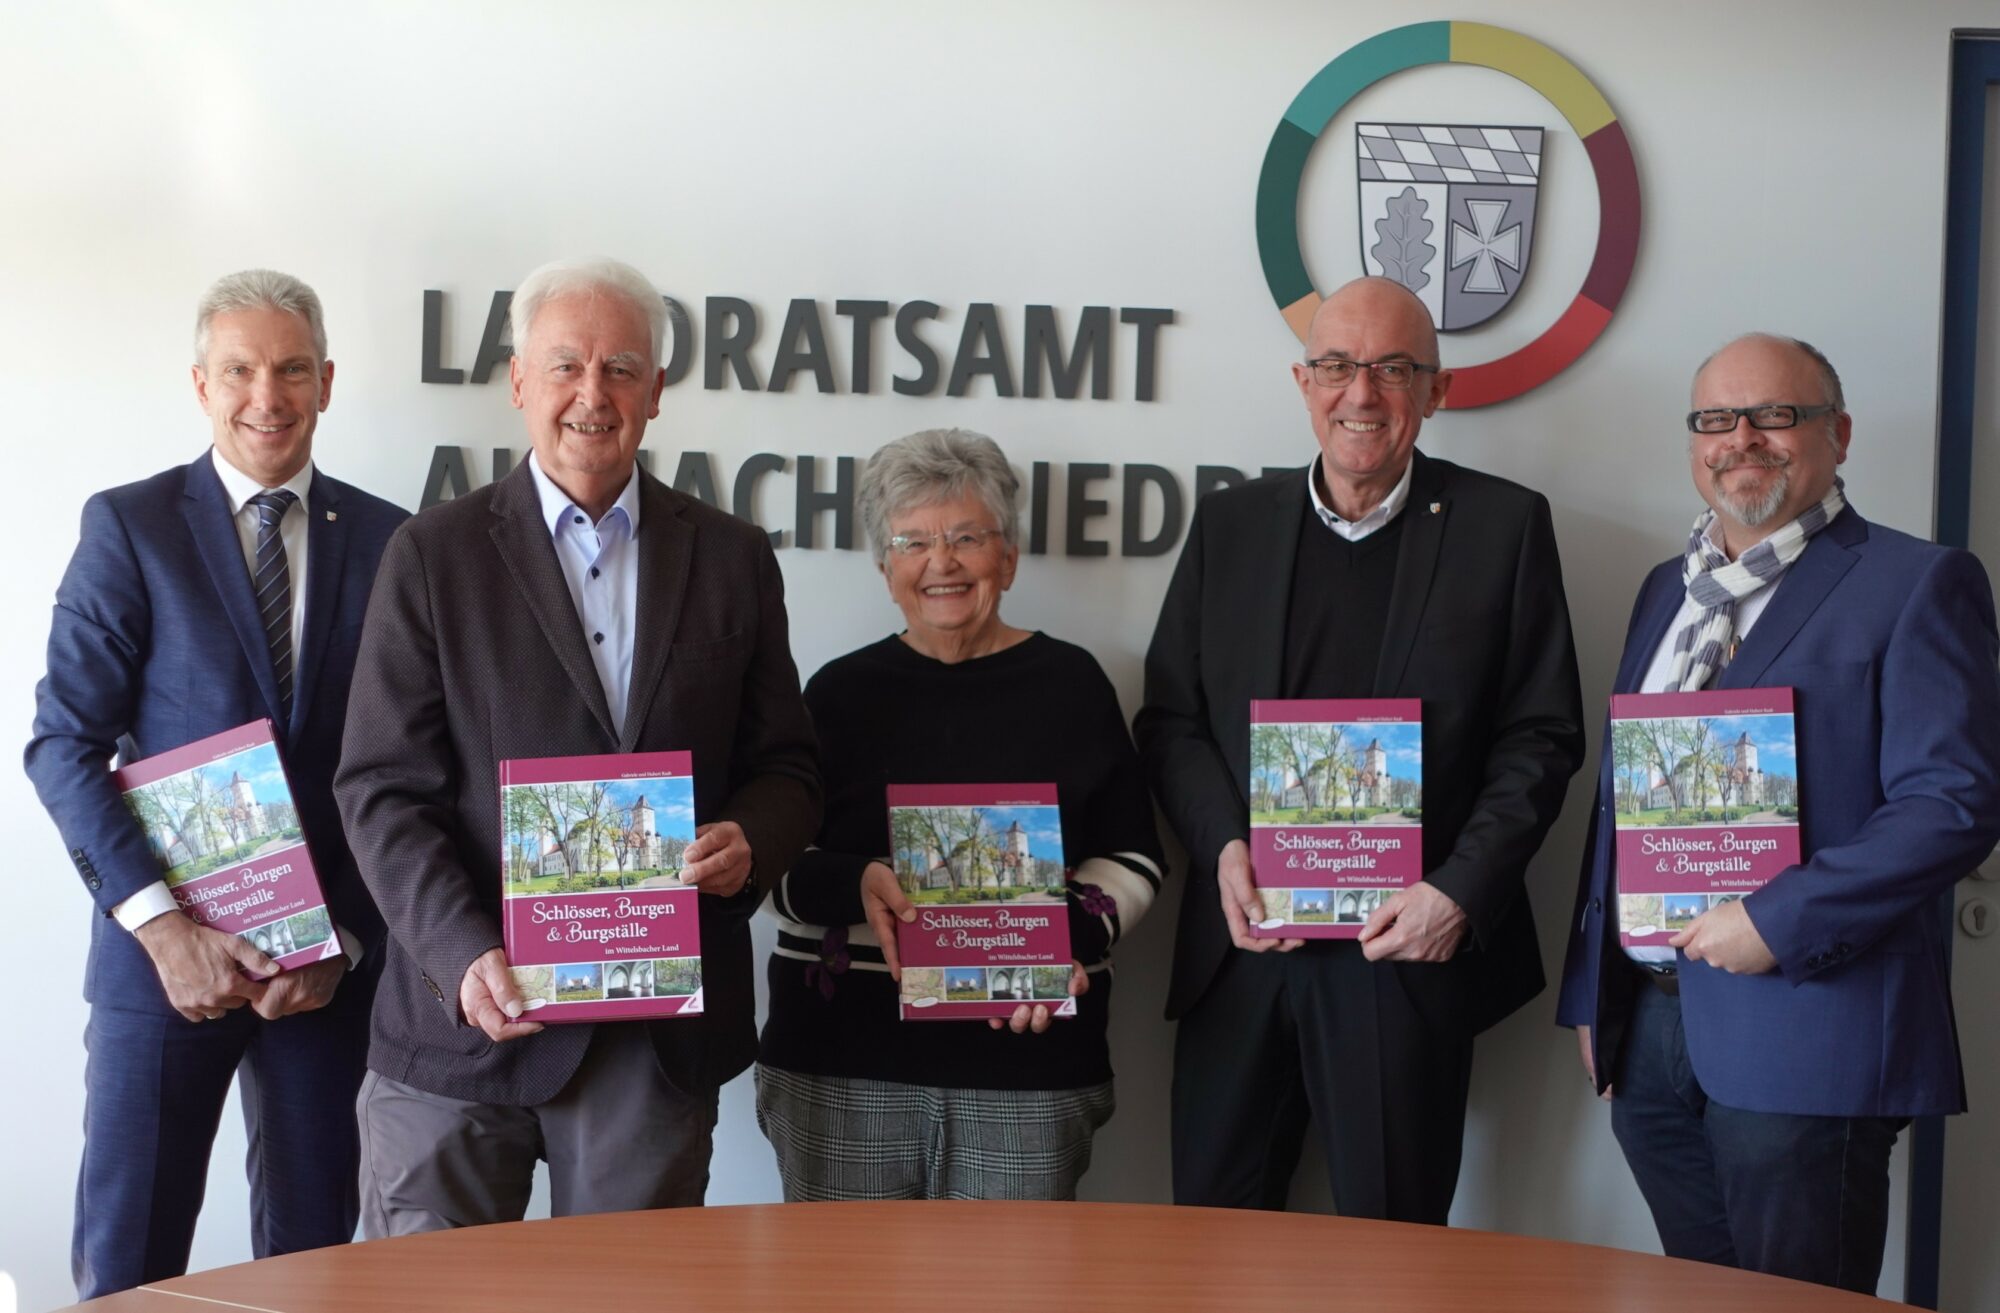 Jeder auf dem Foto hat eine Ausgabe des Buchs in der Hand. Von links nach rechts: Georg Großhauser, Hubert Raab, Gabriele Raab, Landrat Dr. Klaus Metzger, Michael Moratti vom Wißner-Verlag.